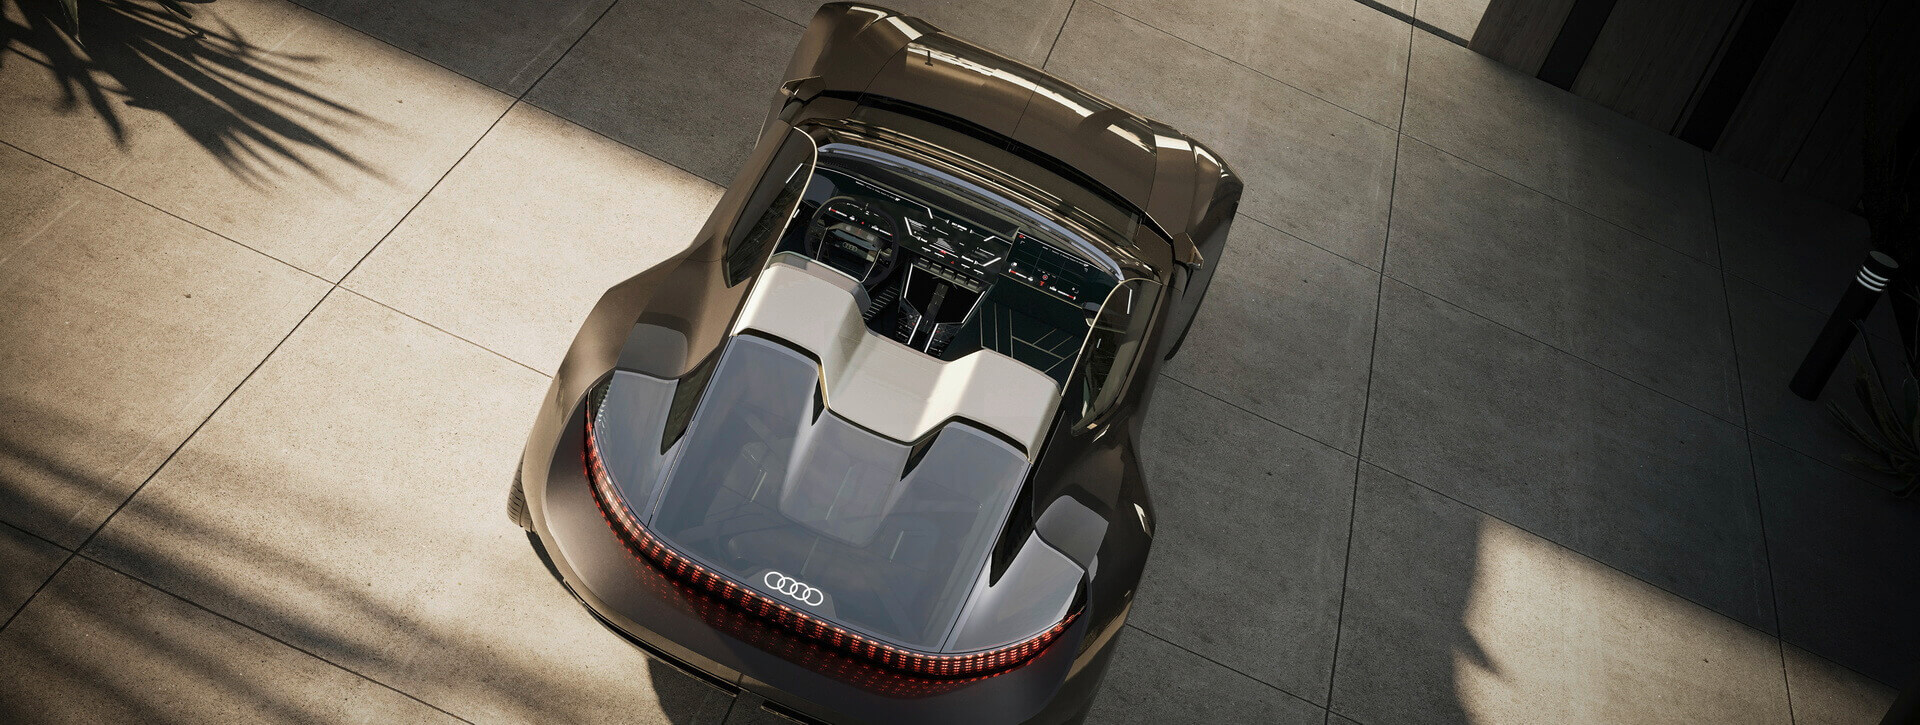 Концепт Audi Skysphere — как две машины в одной